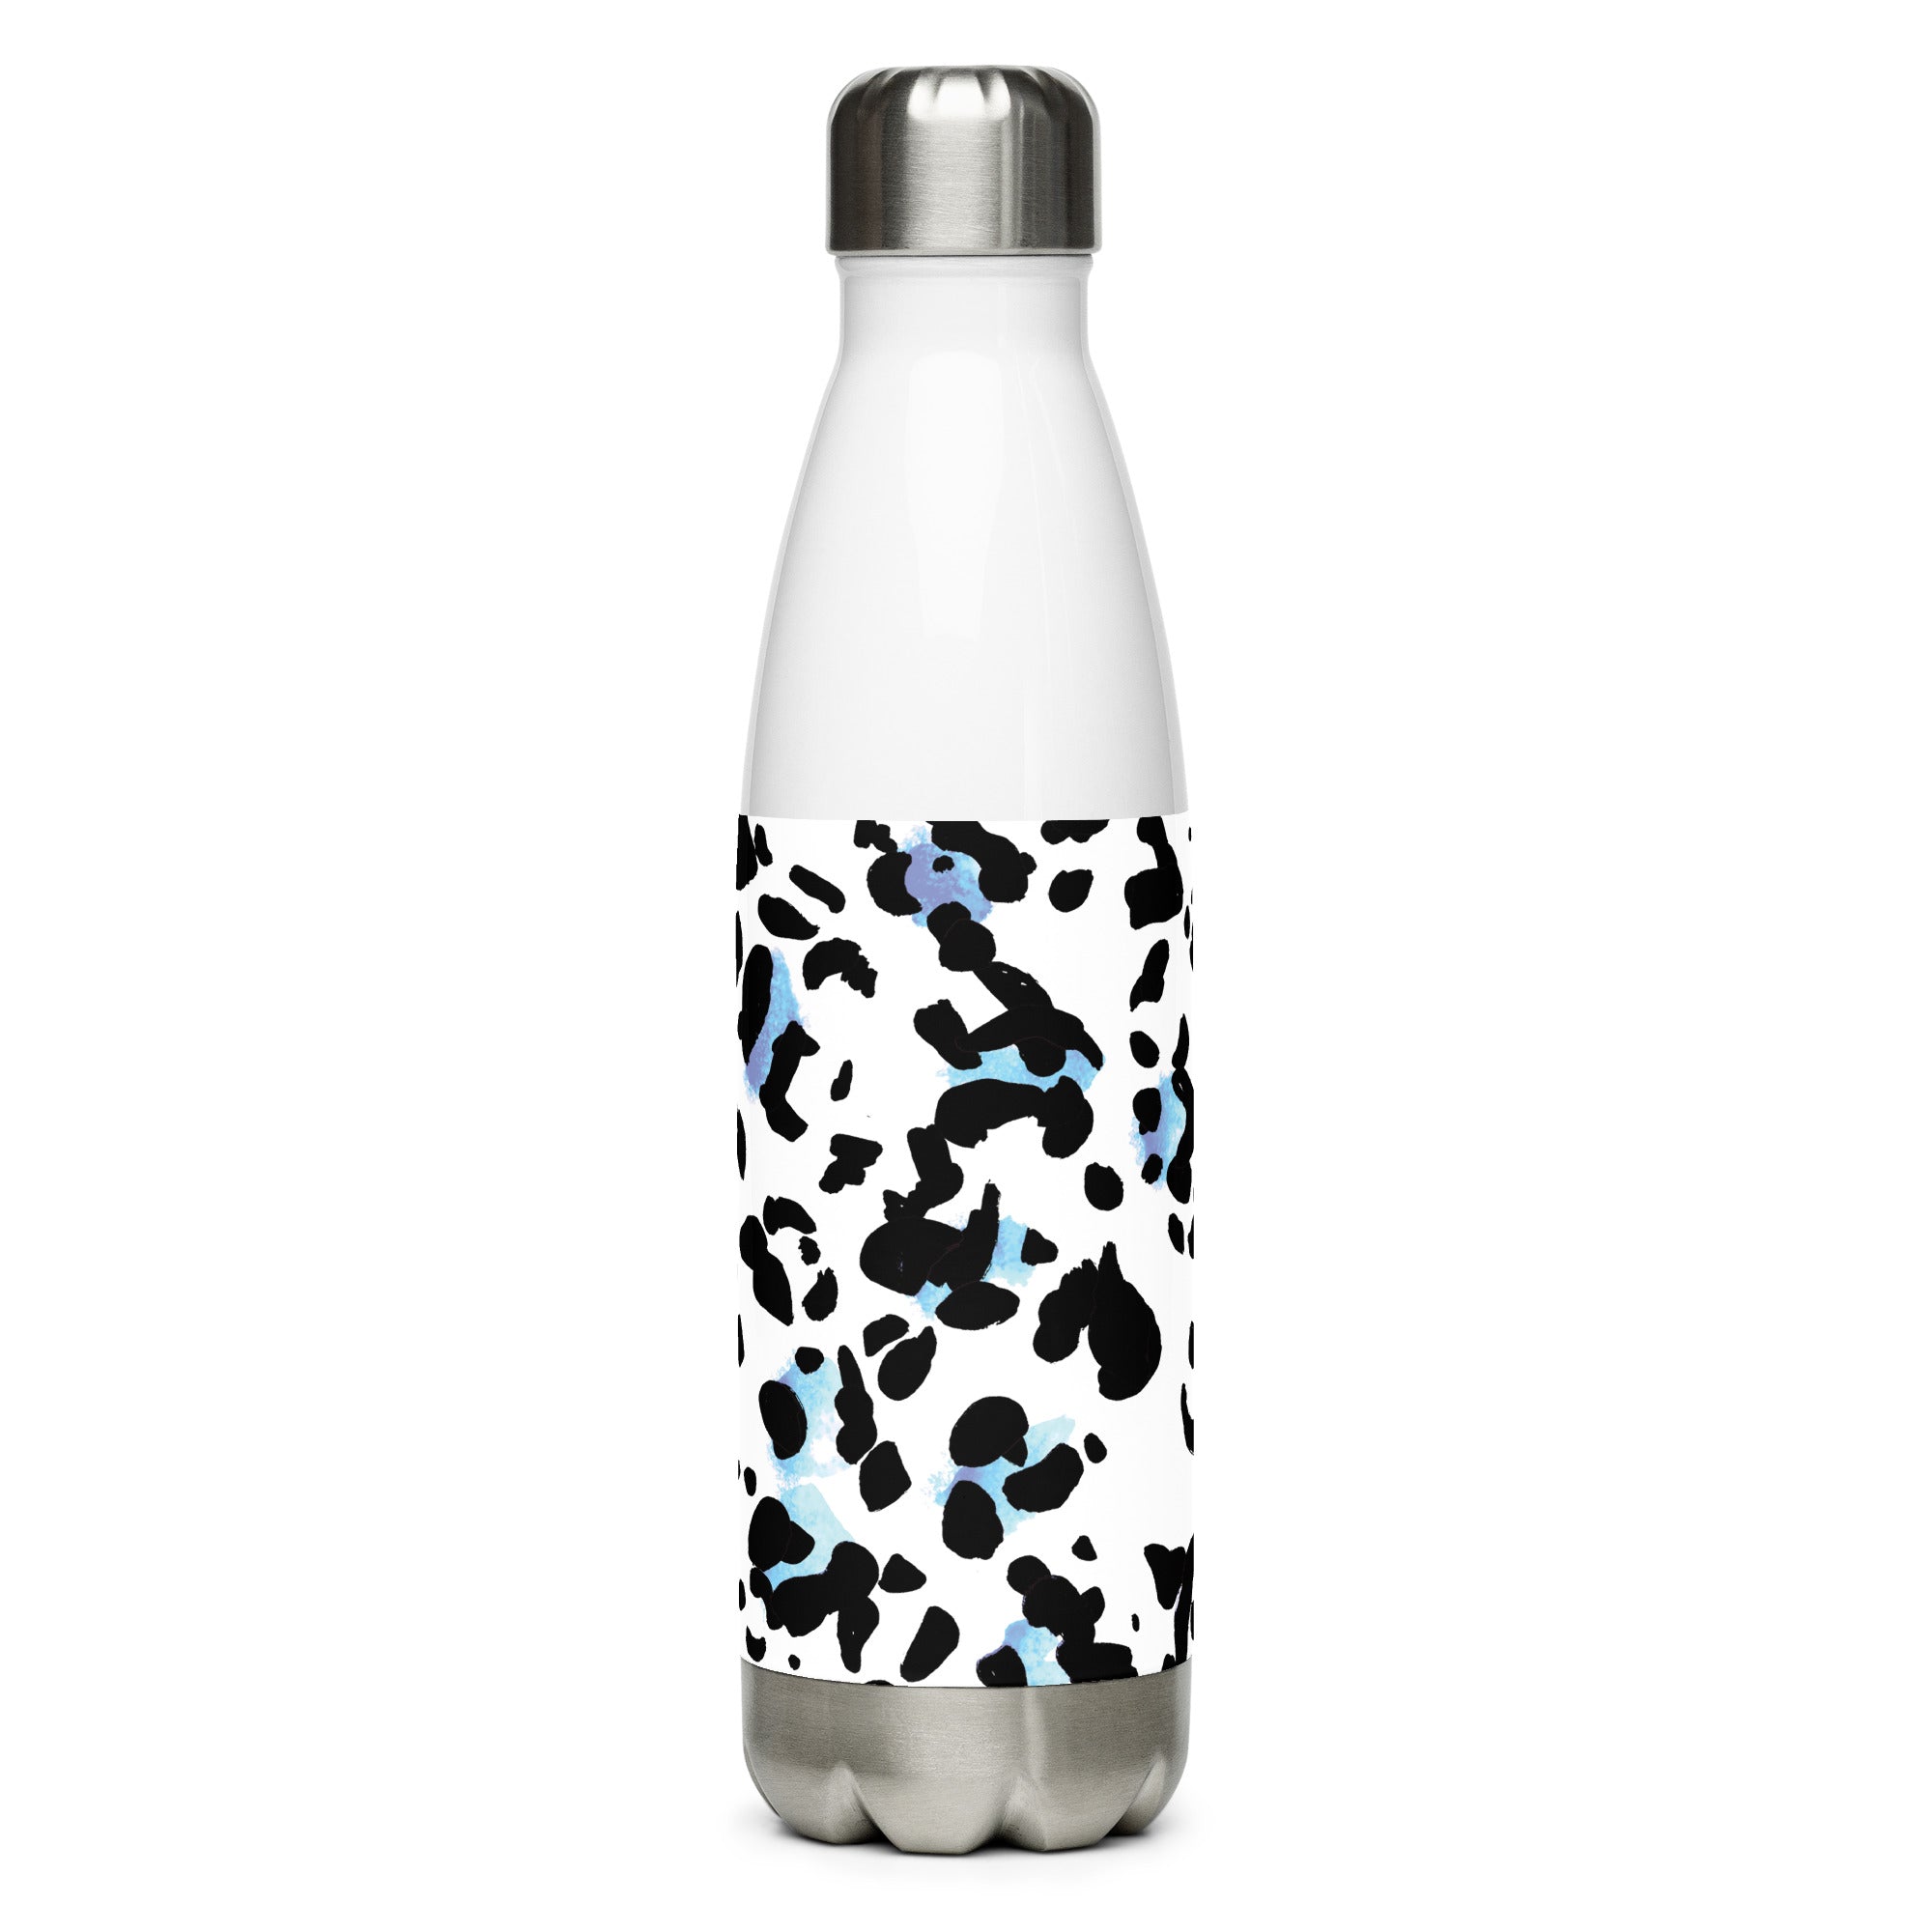 Monochrome Stainless Steel Water Bottle